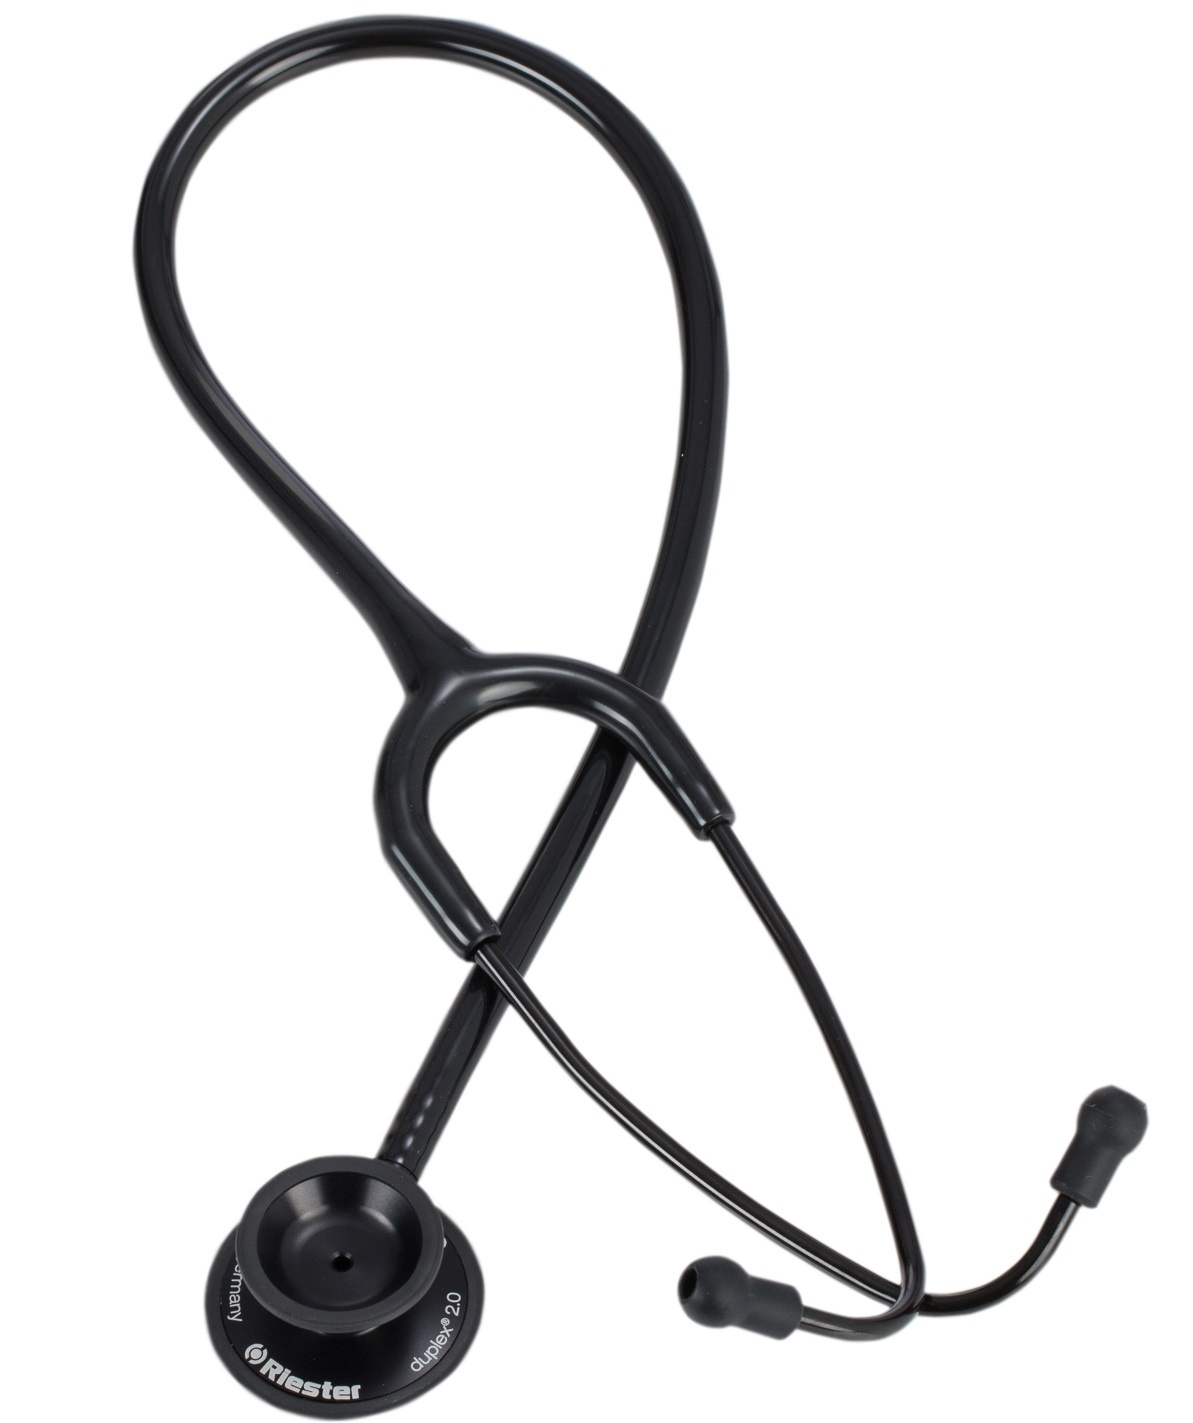 Riester Stethoscope Duplex 2.0 Aluminium Black Edition